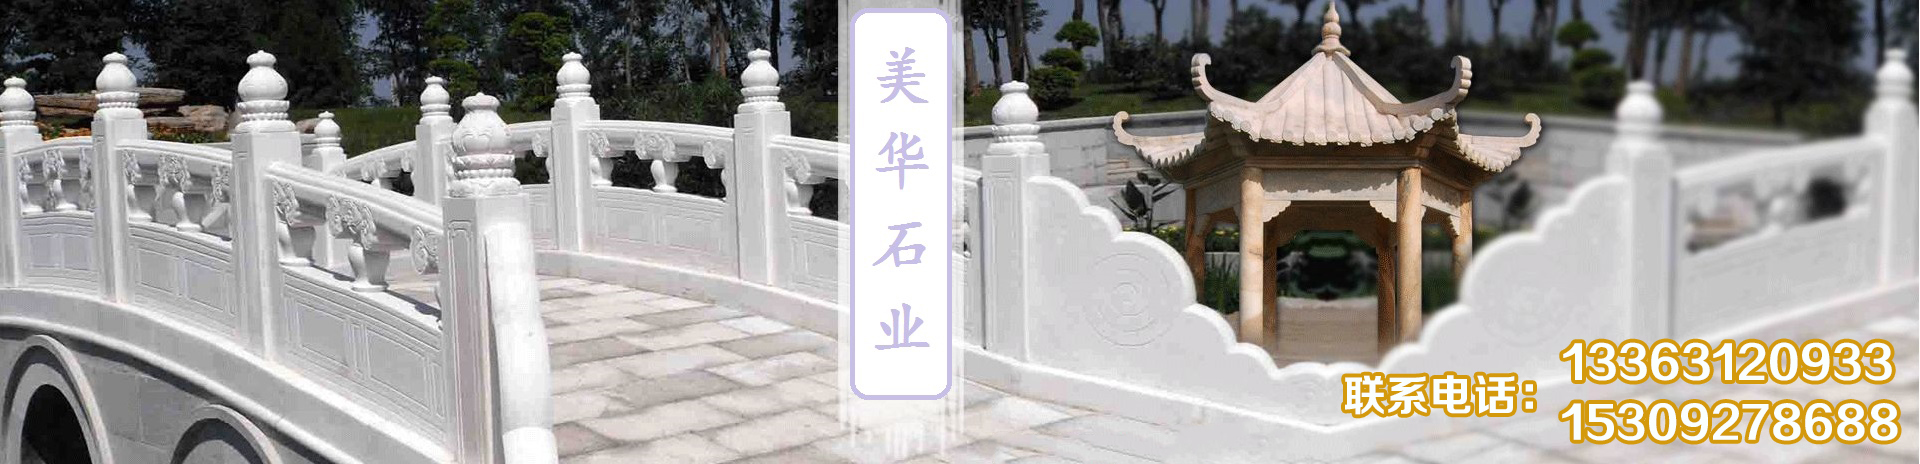 中国石雕协会对石栏杆用途做了相应对比